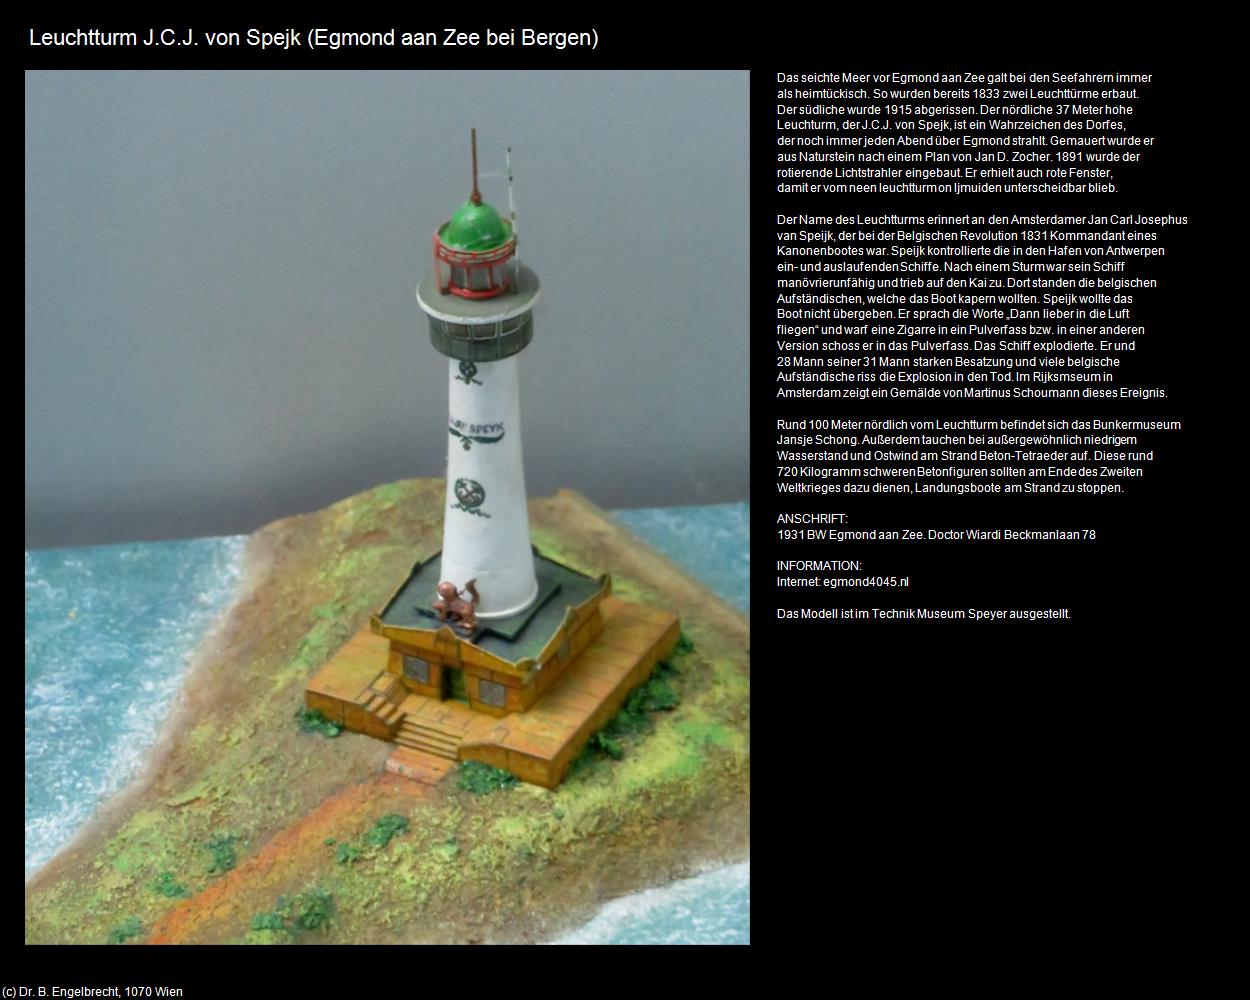 Leuchtturm J.C.J. von Spejk (Egmond aan Zee bei Bergen) in Kulturatlas-NIEDERLANDE